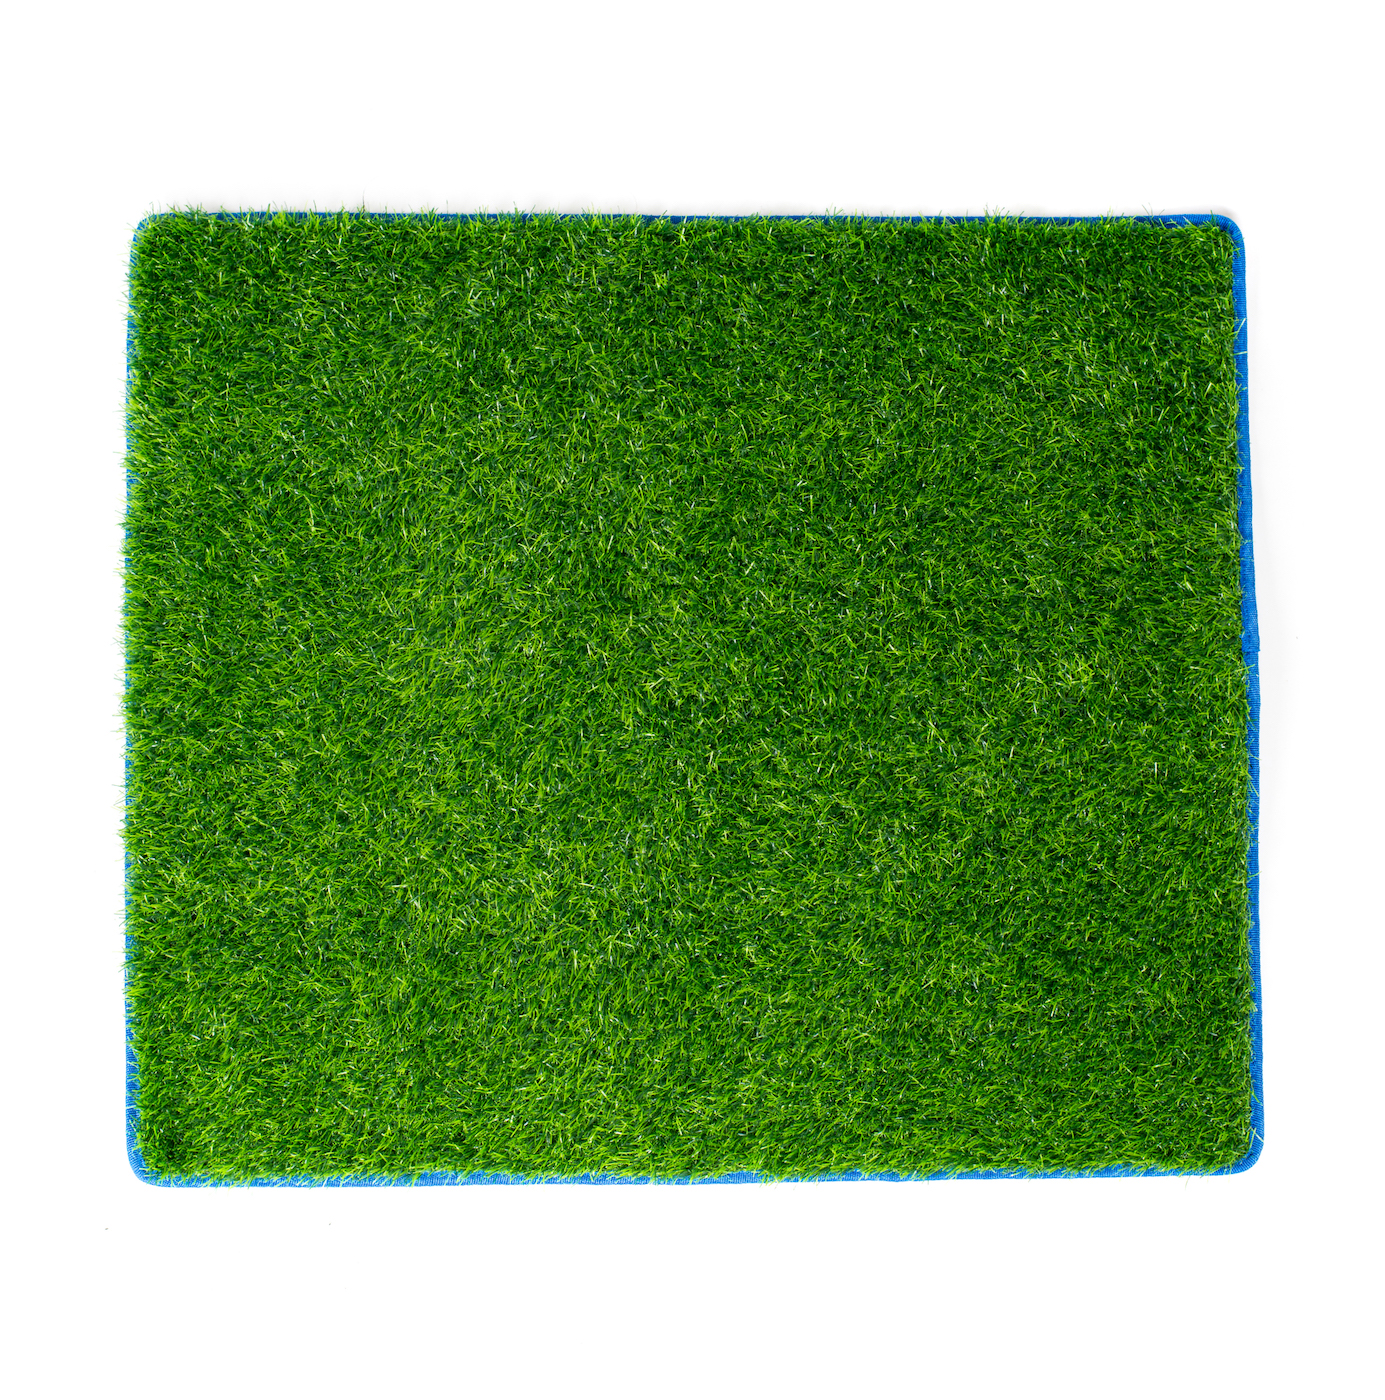 Surflogic Grass Changing Mat (59096)